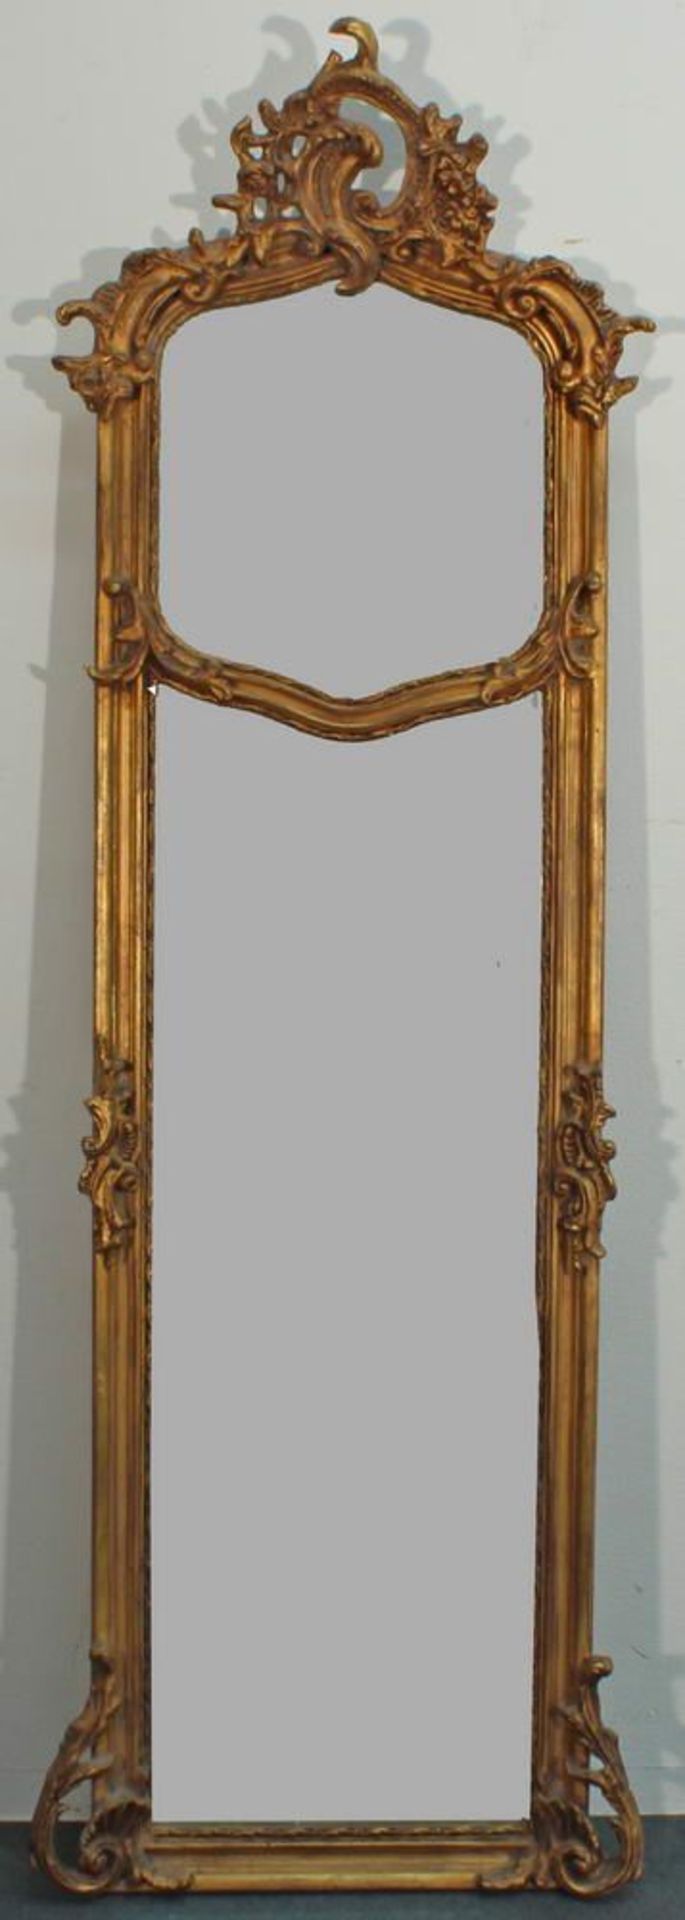 Reserve: 140 EUR        Schmaler Spiegel, französischer Stil, 20. Jh., Holz goldfarbig, reiche - Image 2 of 2